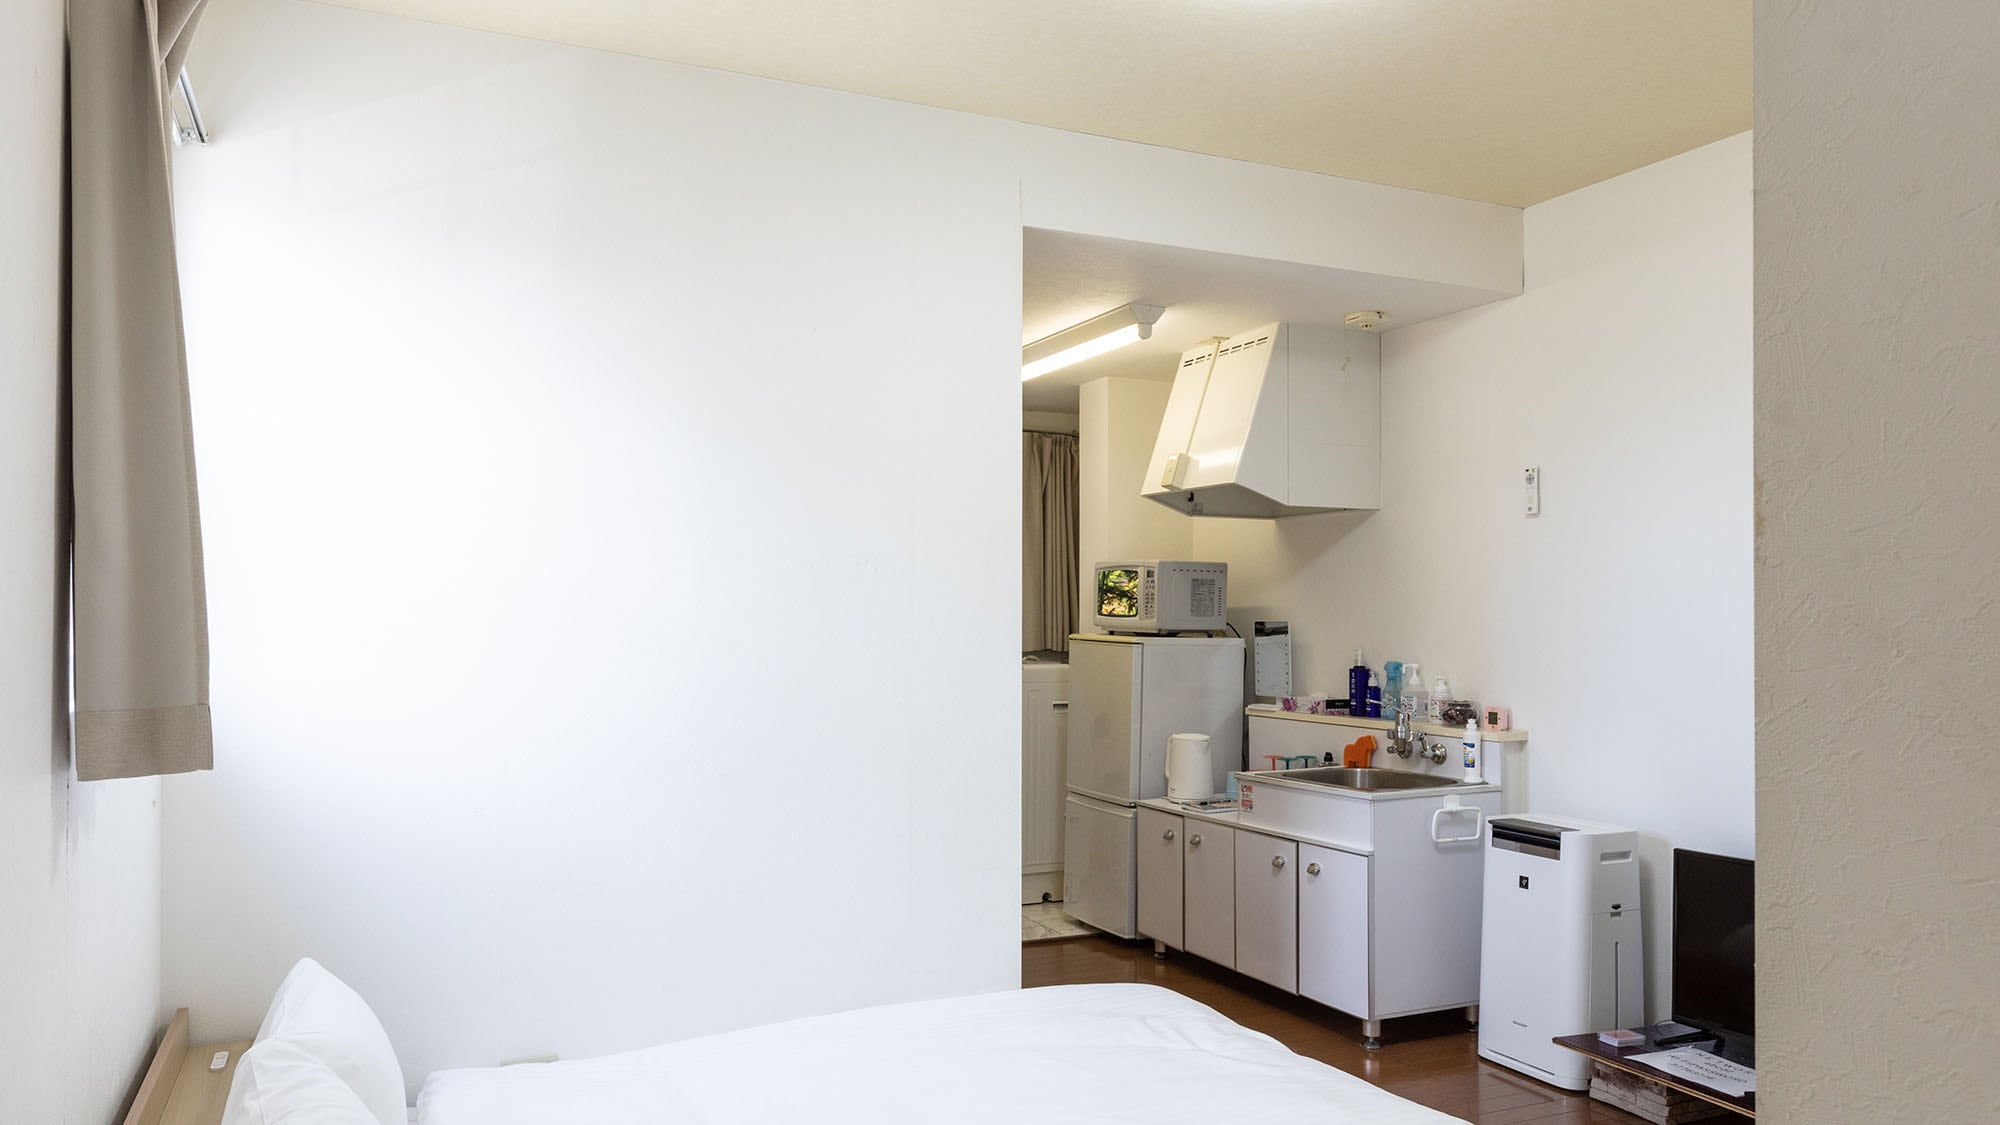 ・ ห้องพักทุกห้องมีห้องครัวขนาดเล็ก ซึ่งแนะนำสำหรับการเข้าพักติดต่อกันหลายคืนและระยะยาว!